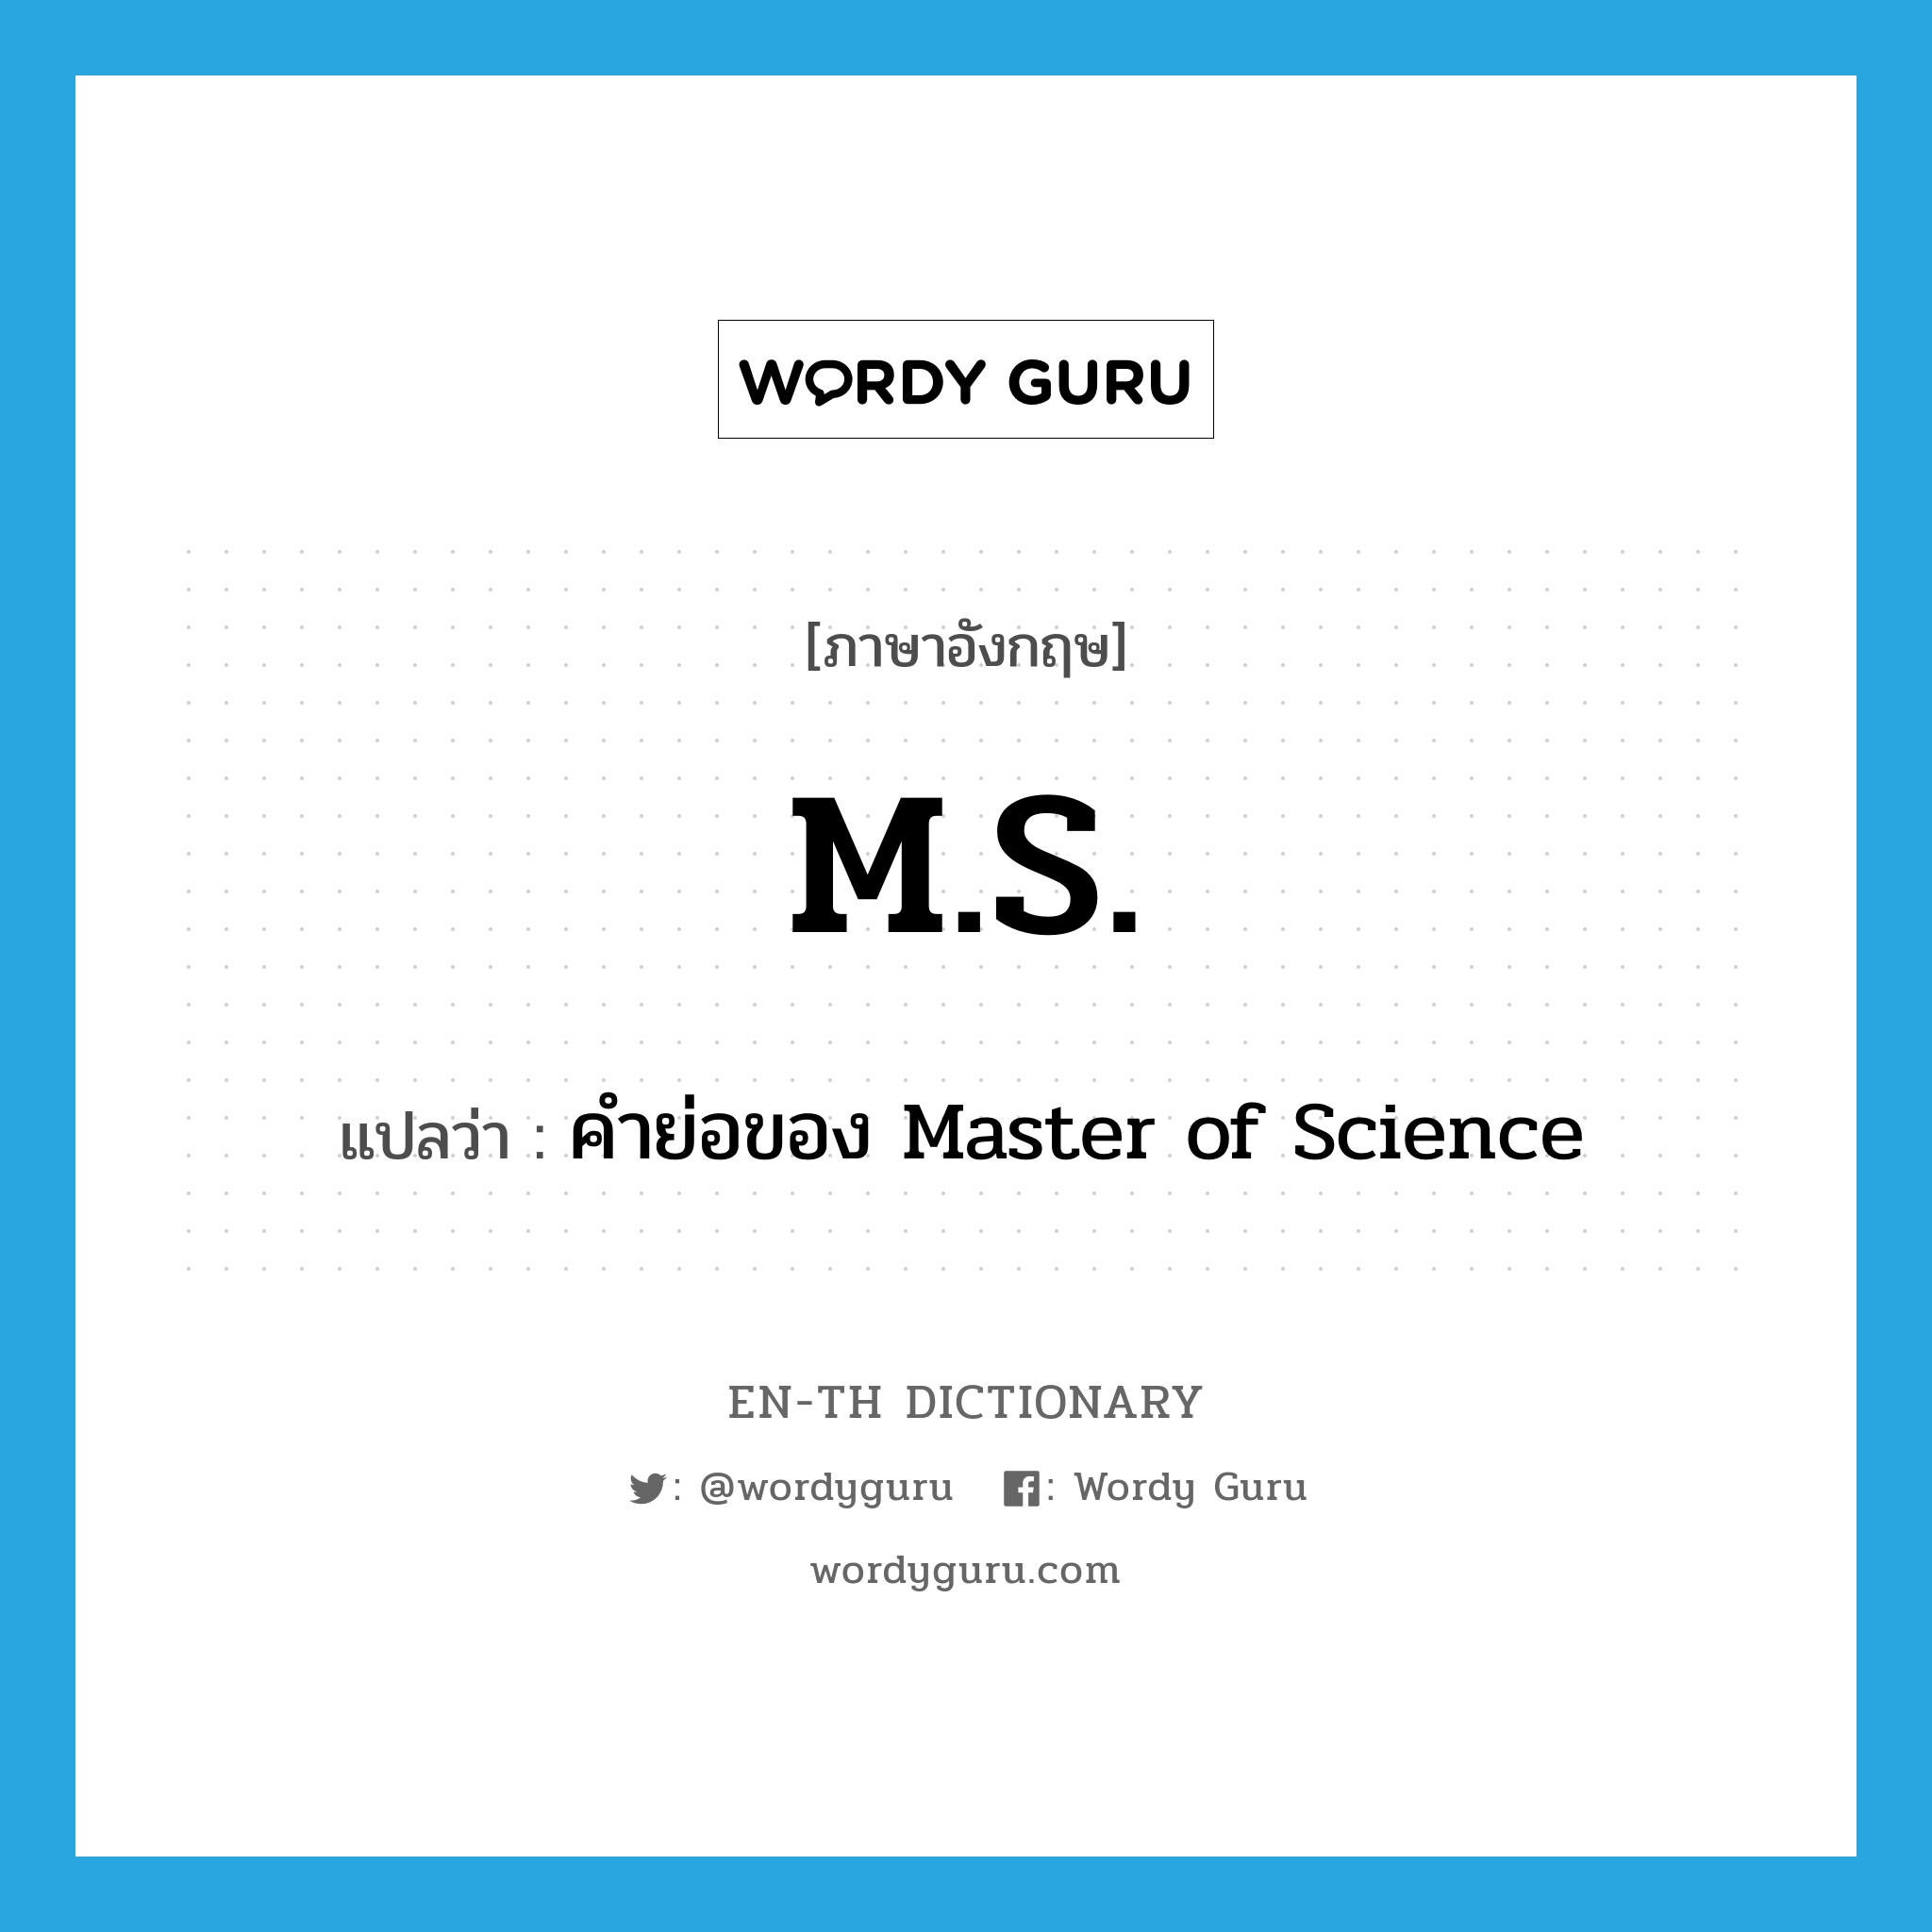 คำย่อของ Master of Science ภาษาอังกฤษ?, คำศัพท์ภาษาอังกฤษ คำย่อของ Master of Science แปลว่า M.S. ประเภท ABBR หมวด ABBR